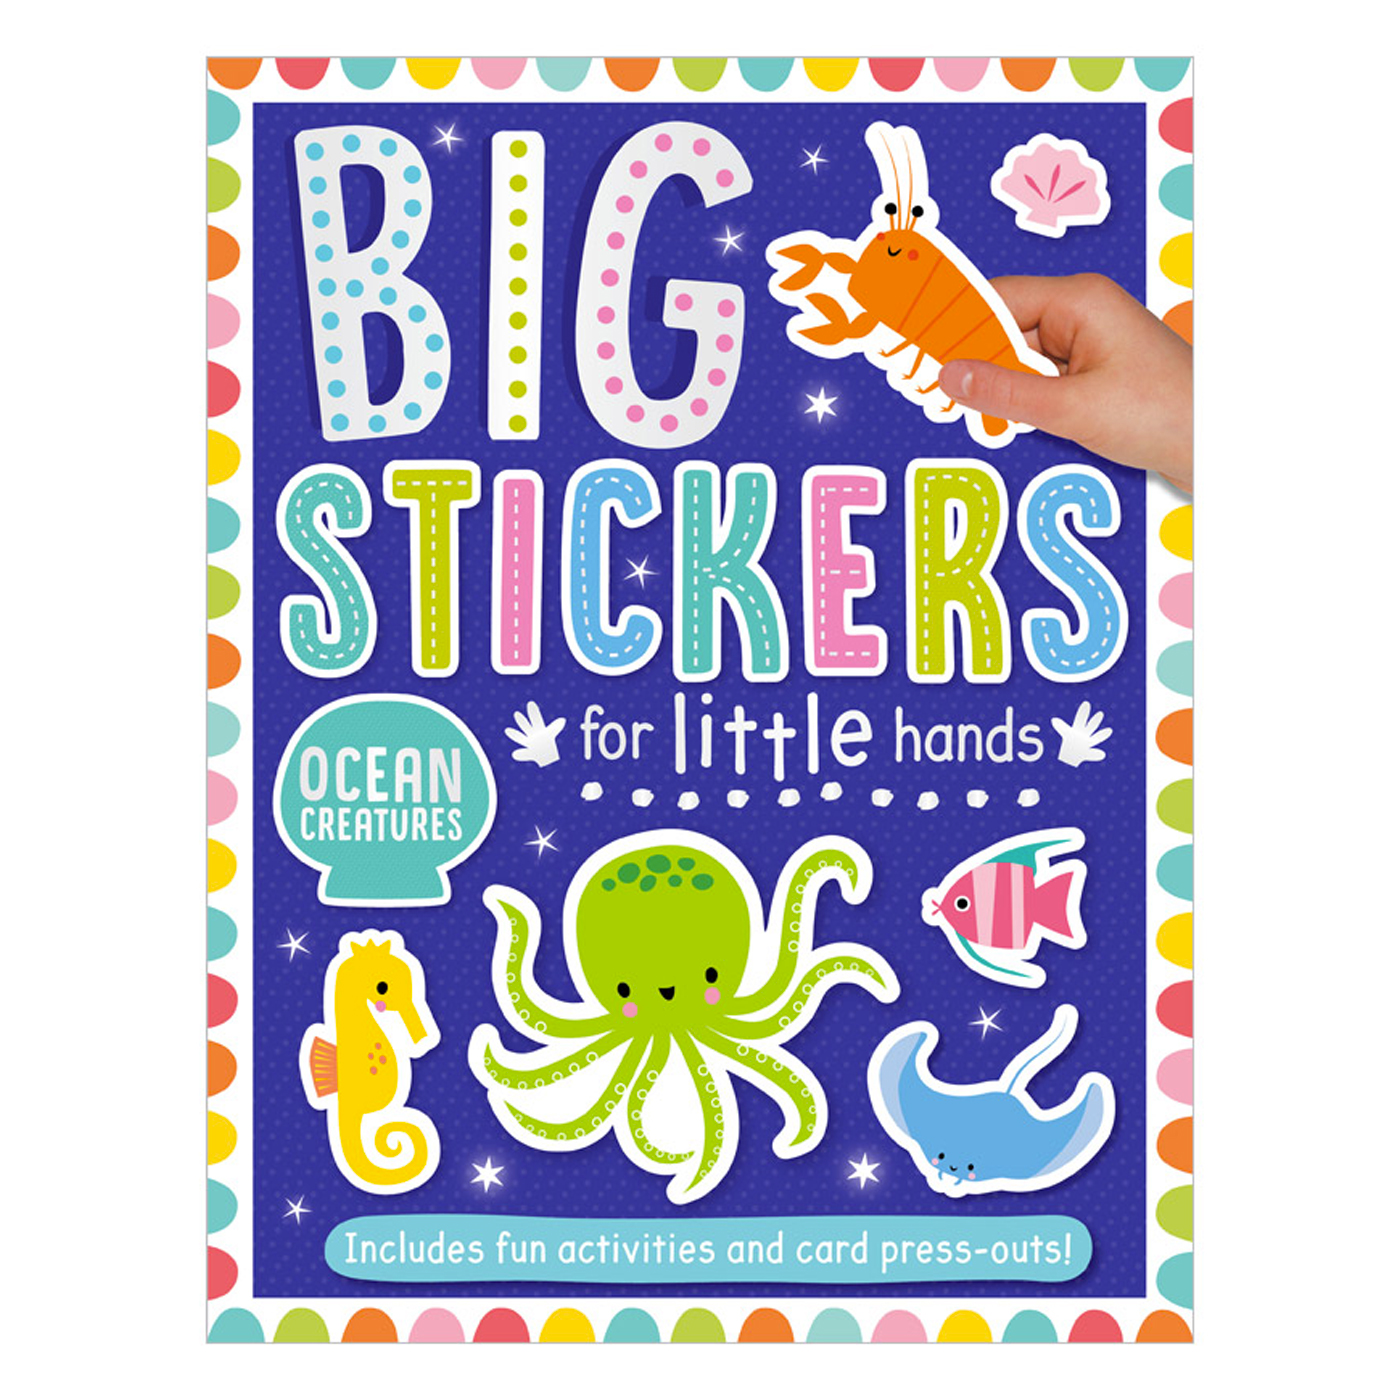  Big Stickers for Little Hands Ocean Creatures